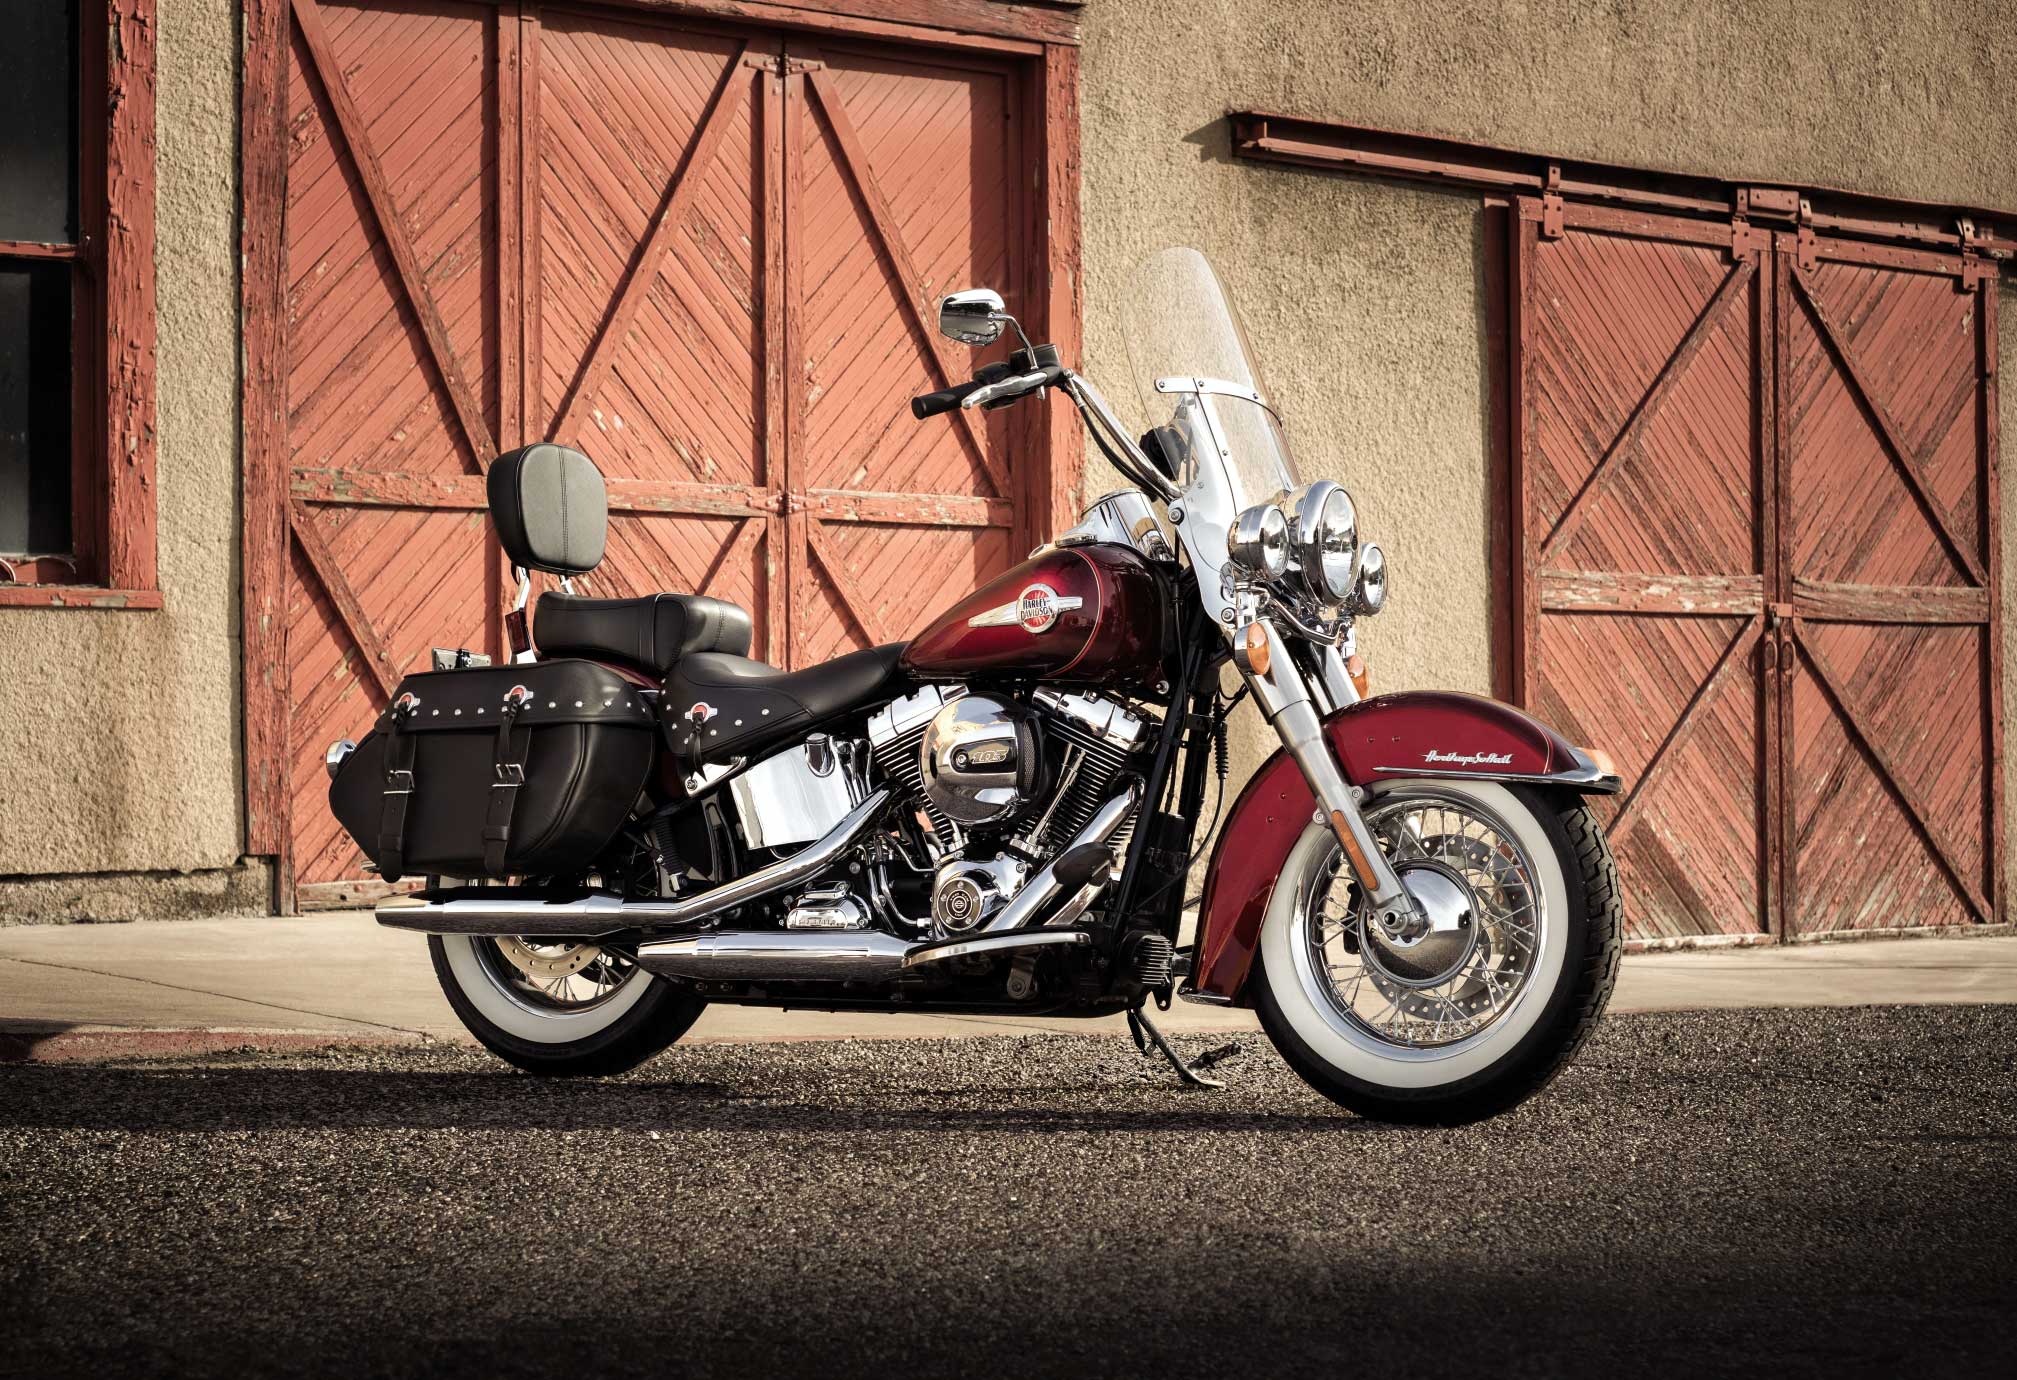 Télécharger des fonds d'écran Harley Davidson Héritage Softail Classique HD